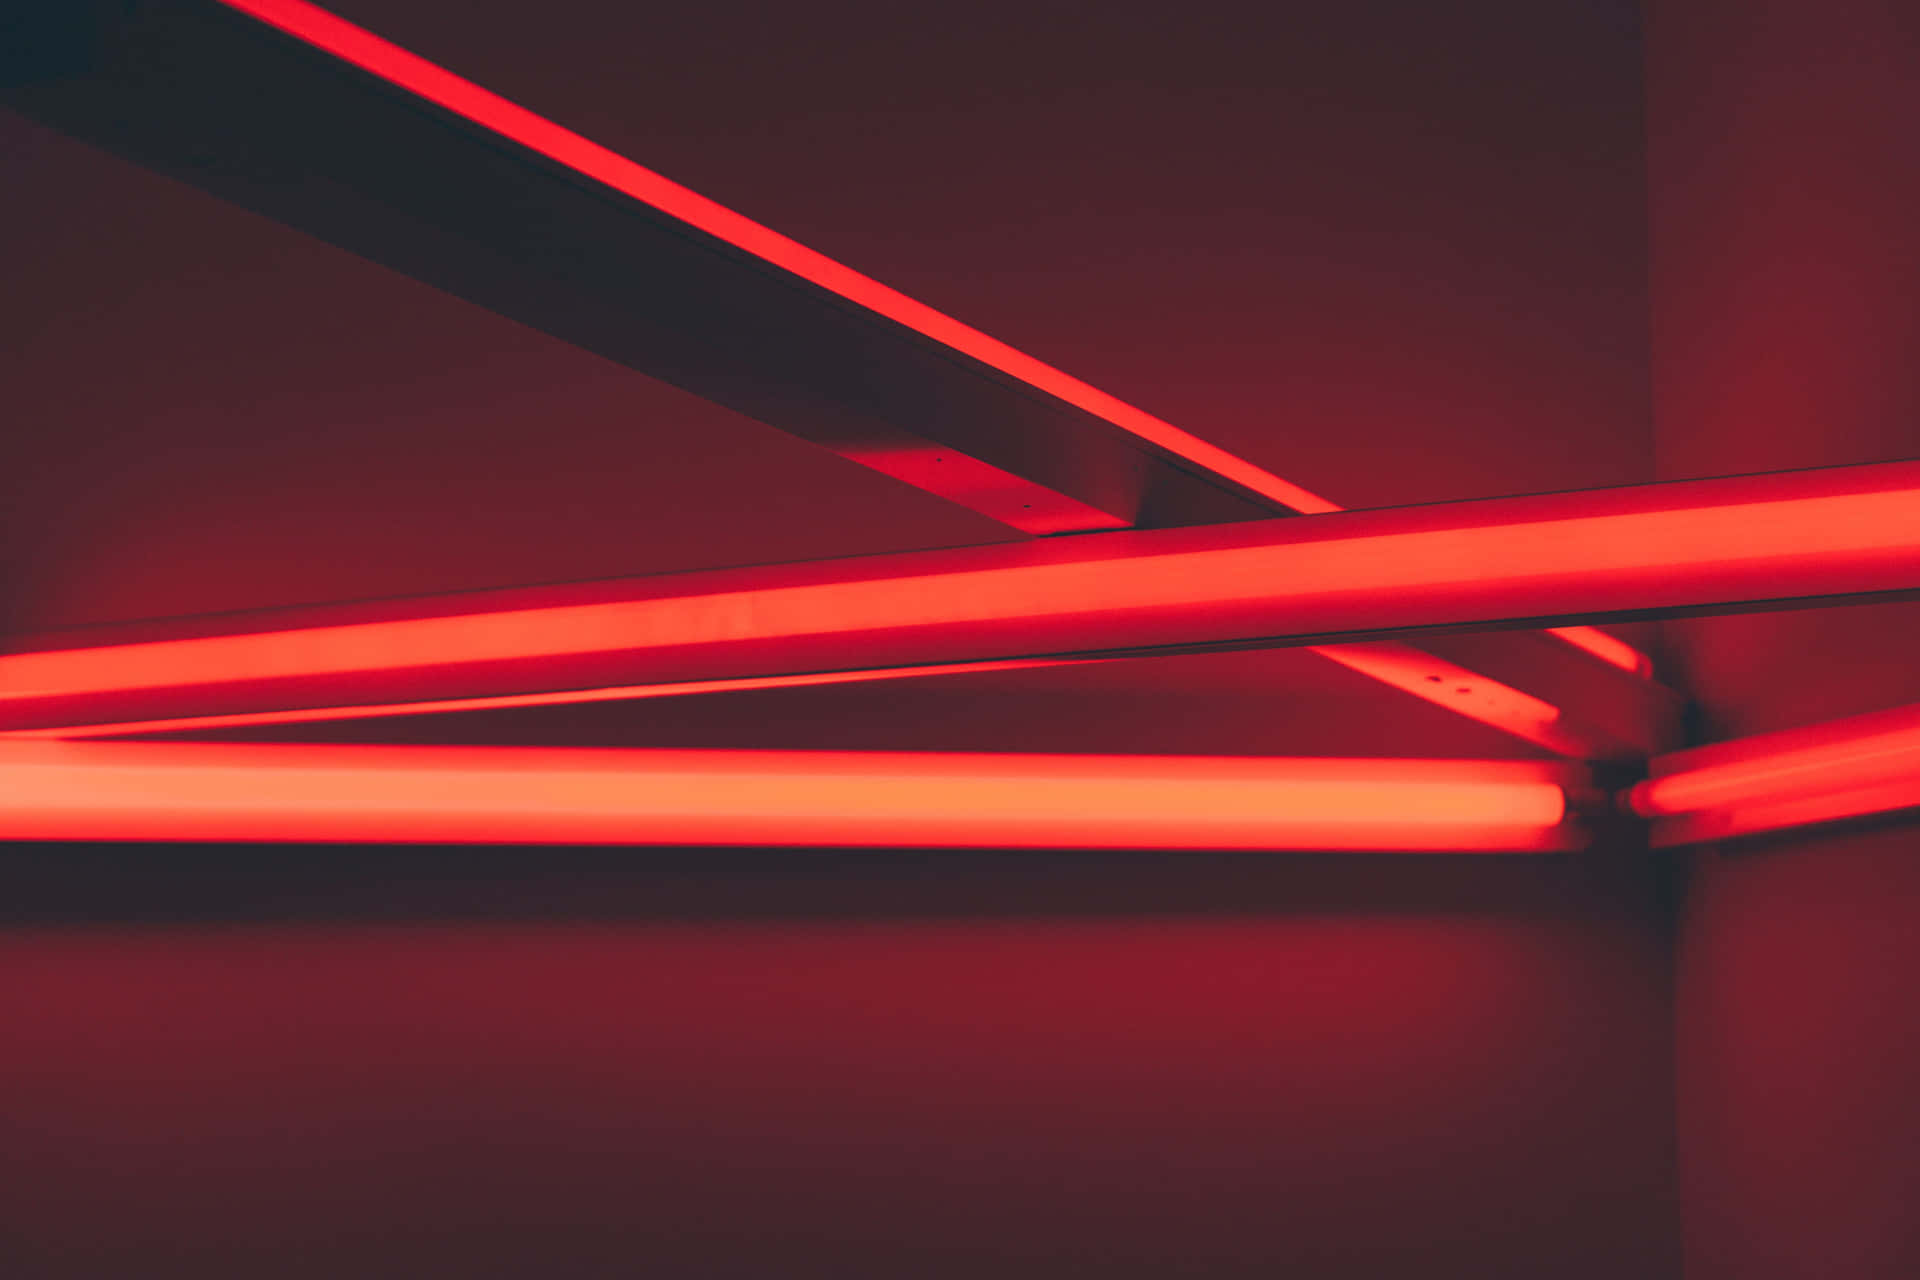 A striking Red LED light Wallpaper